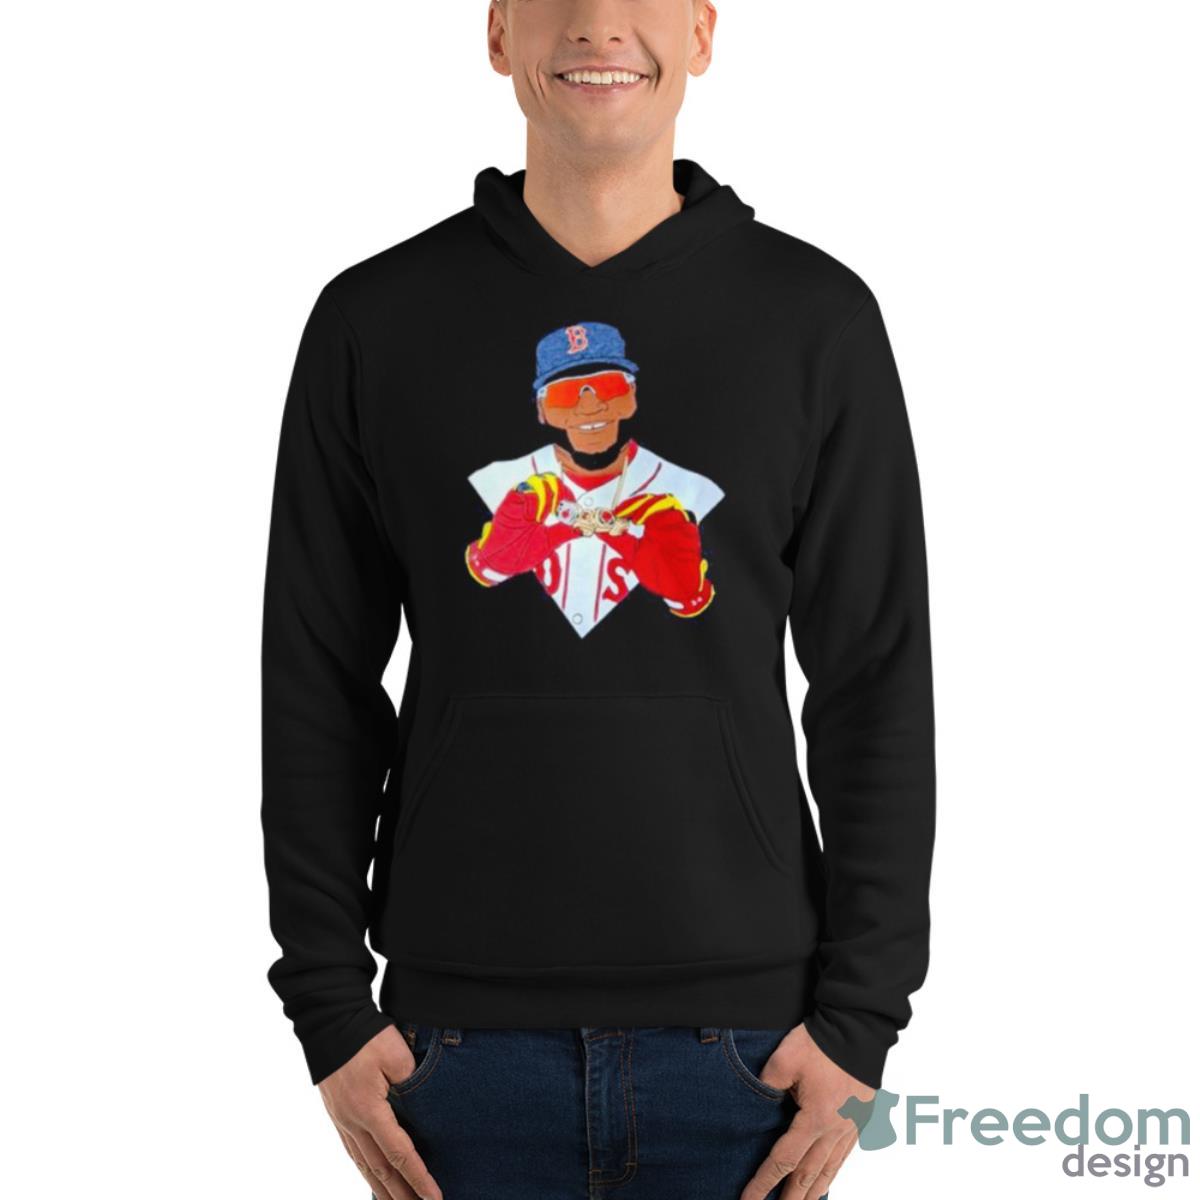 David Ortiz Big Papi Shirt - Freedomdesign